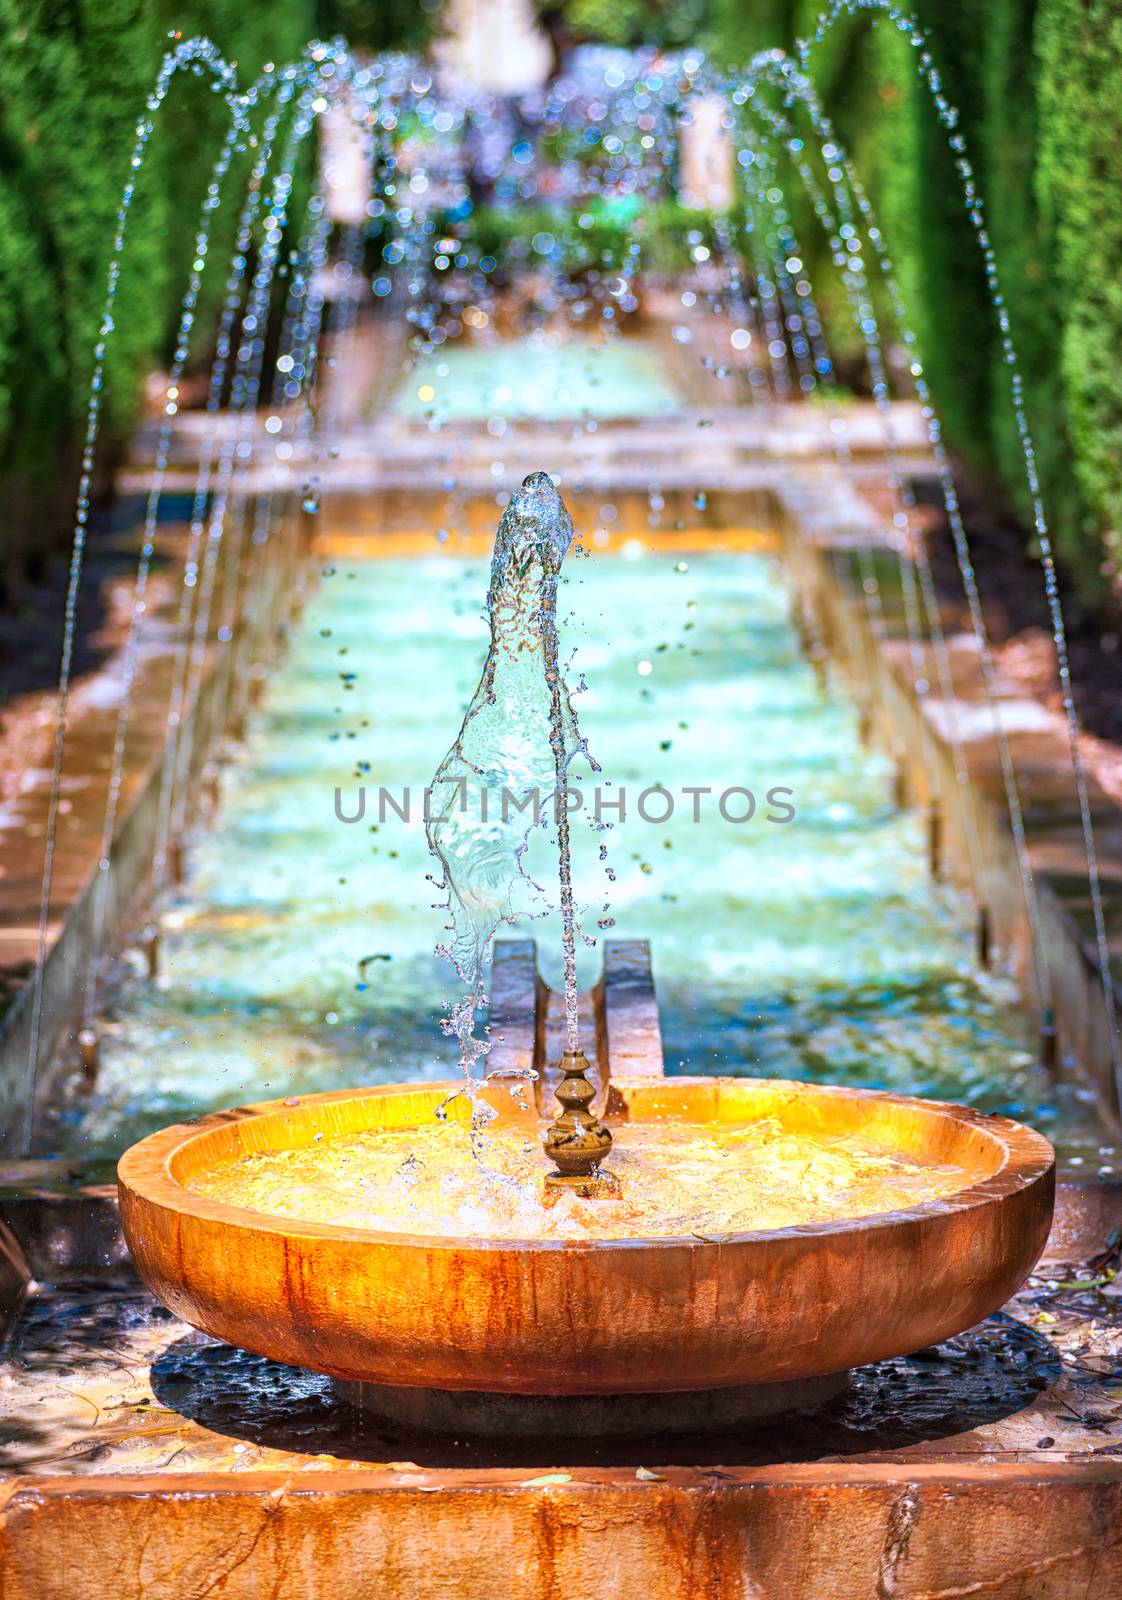 Fountain in the palace garden of Palma de Majorca, Spain by GlobePhotos